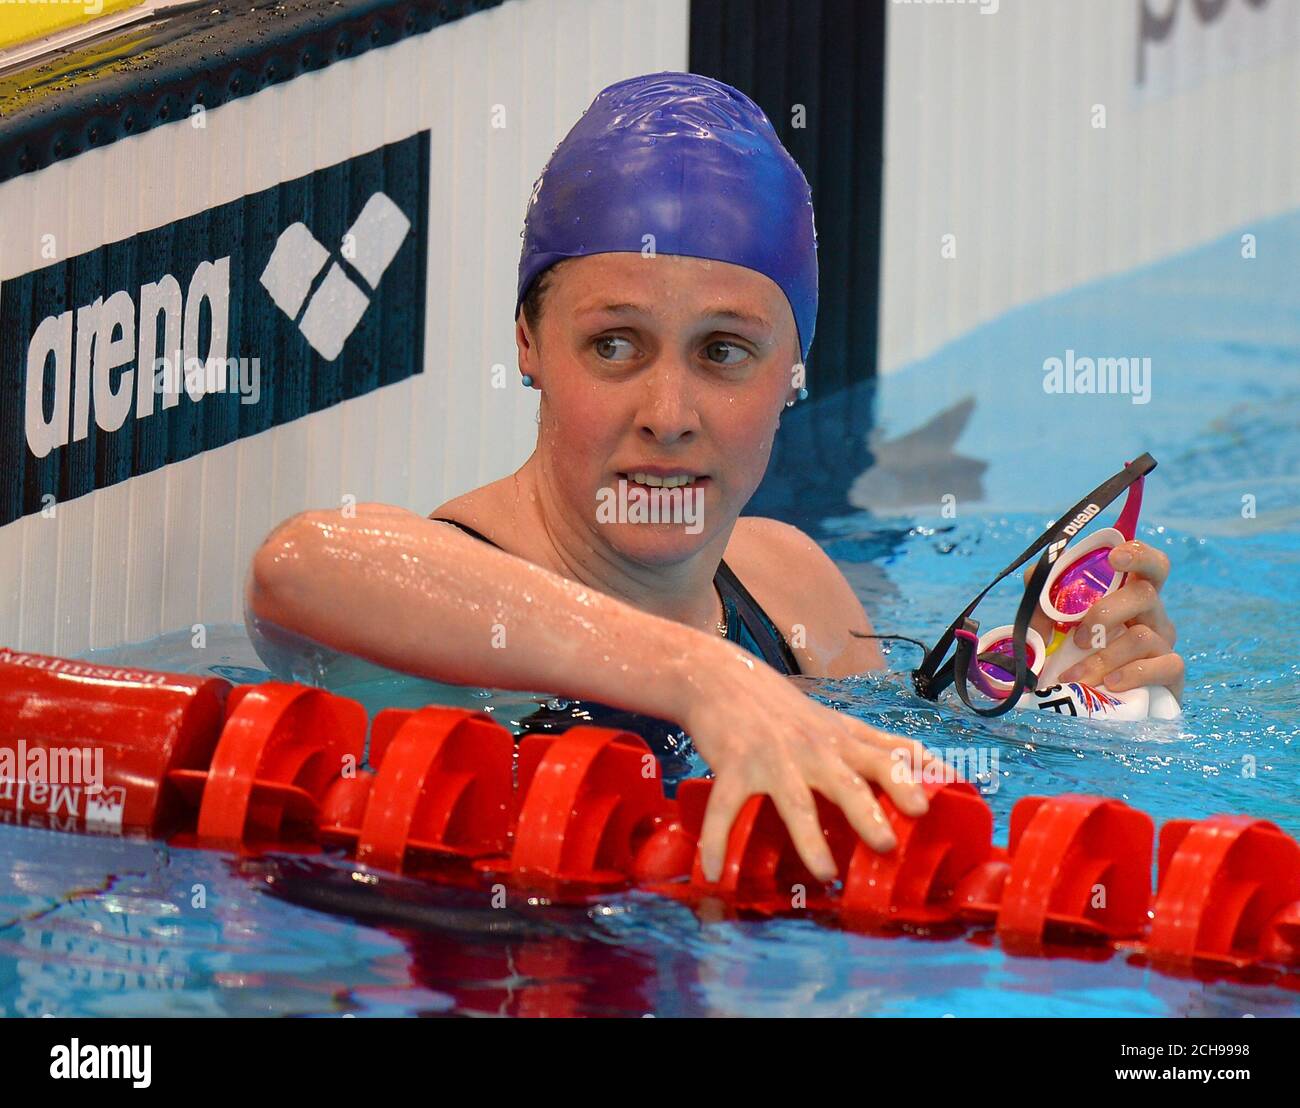 Hannah Miley, en Grande-Bretagne, après avoir terminé sa demi-finale féminine Medley de 200 m pendant le dixième jour des championnats d'athlétisme européens au London Aquatics Centre, à Stratford. Banque D'Images